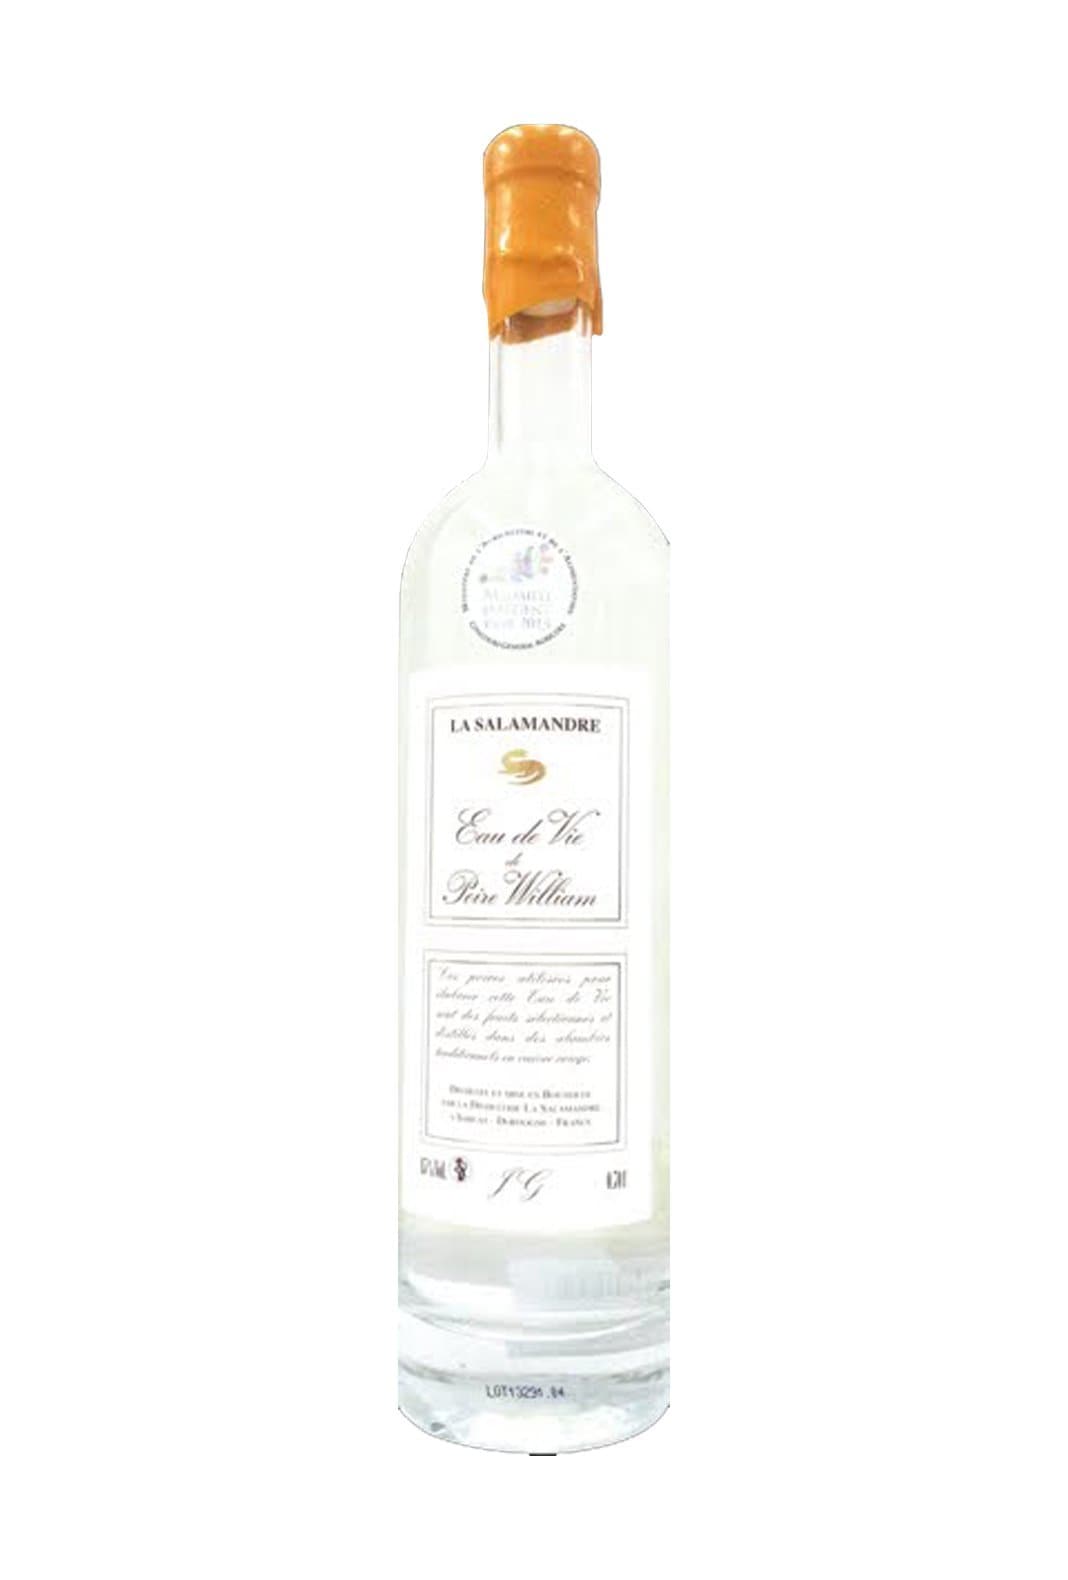 La Salamandre Eau de Vie Poire William 45% 700ml | Liquor & Spirits | Shop online at Spirits of France